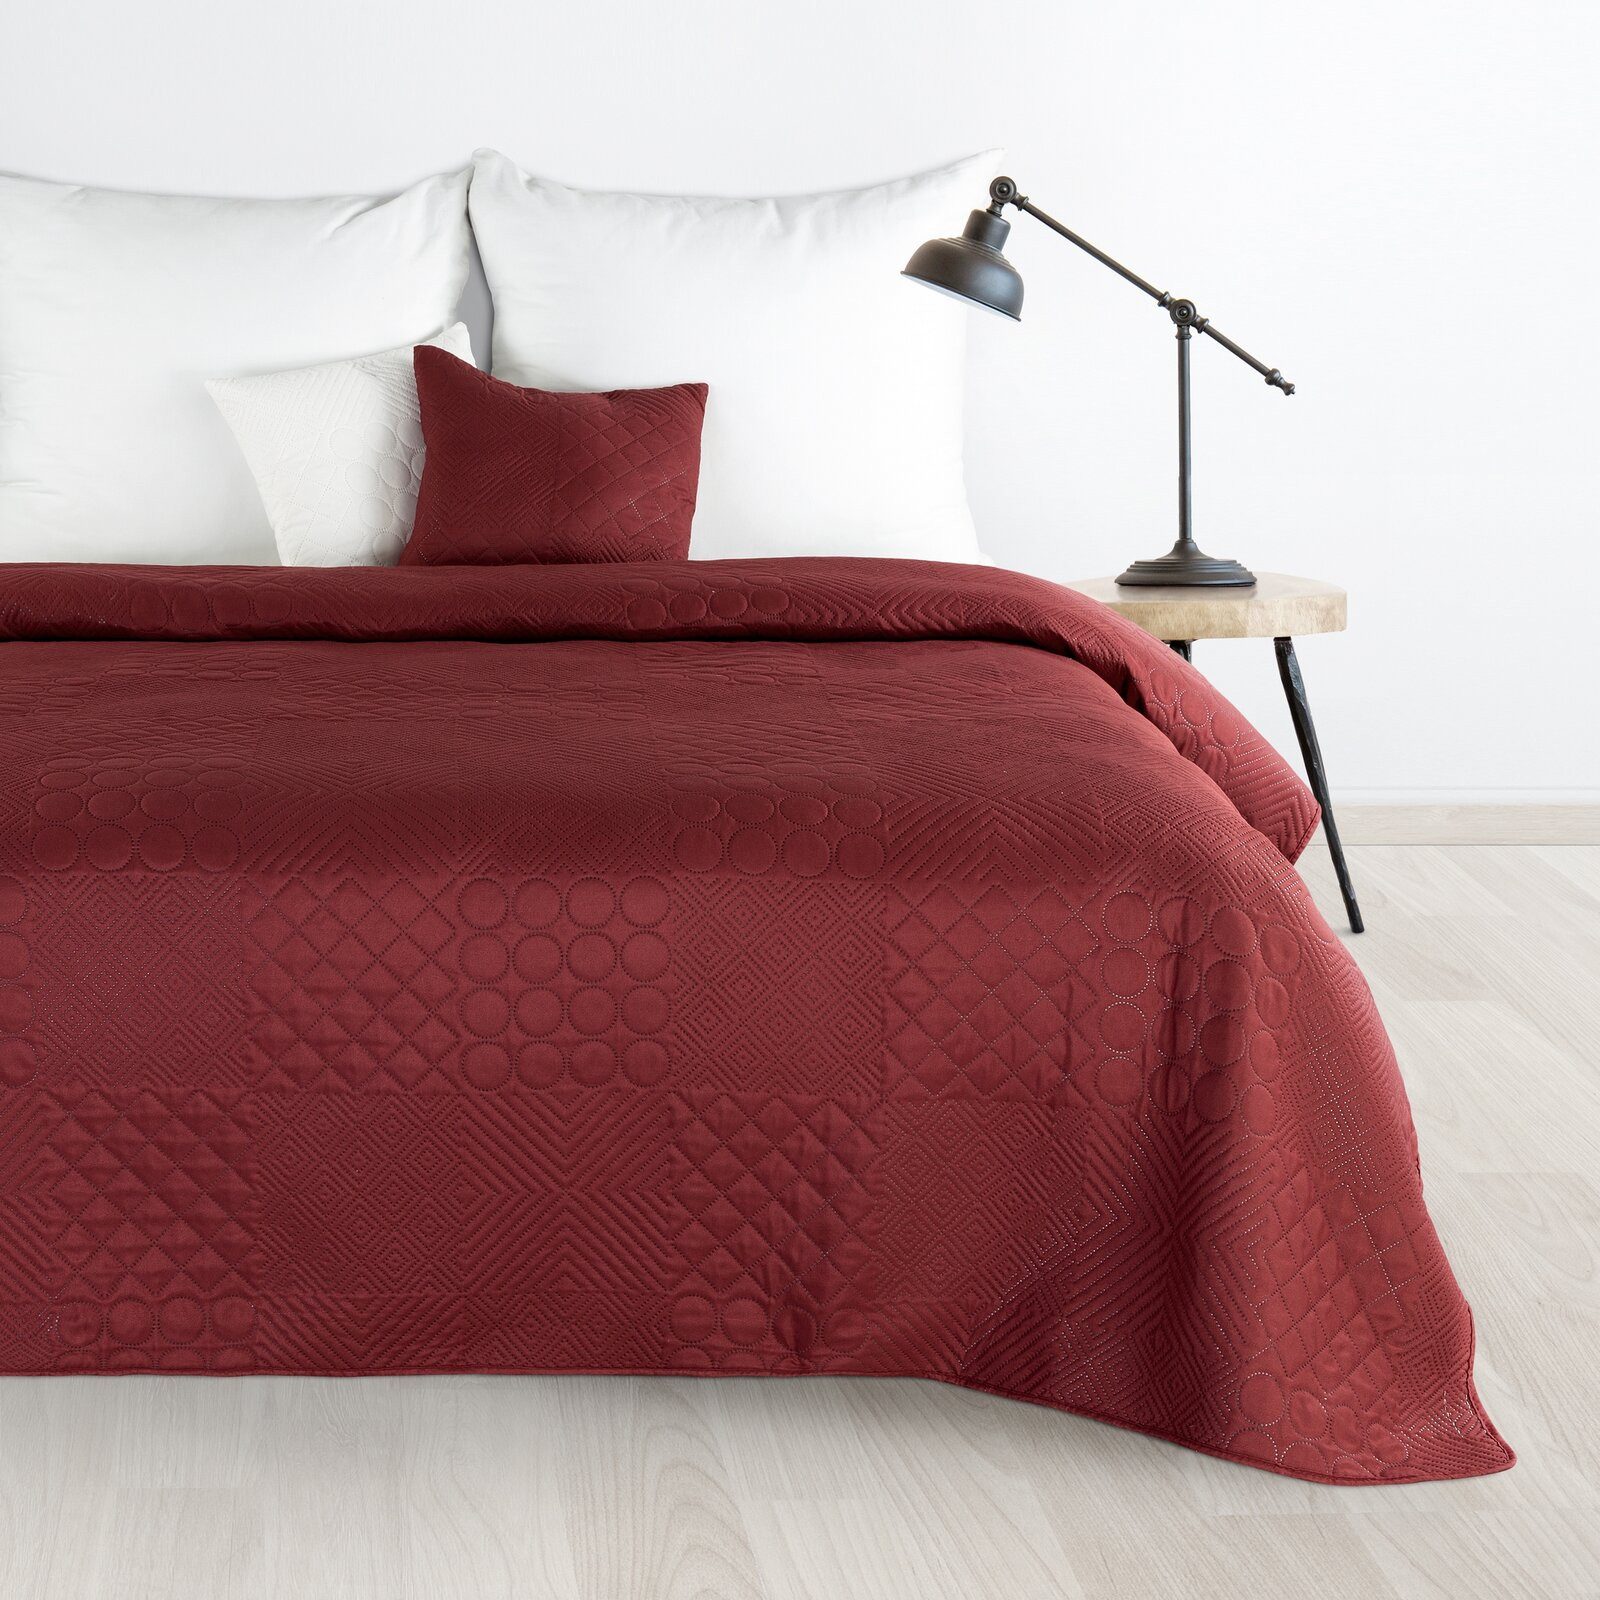 Bettüberwurf Zweiseitige Decke, Design91, dekorative Decke ganzjährige Sofadecke, einfarbige moderne Tagesdecke